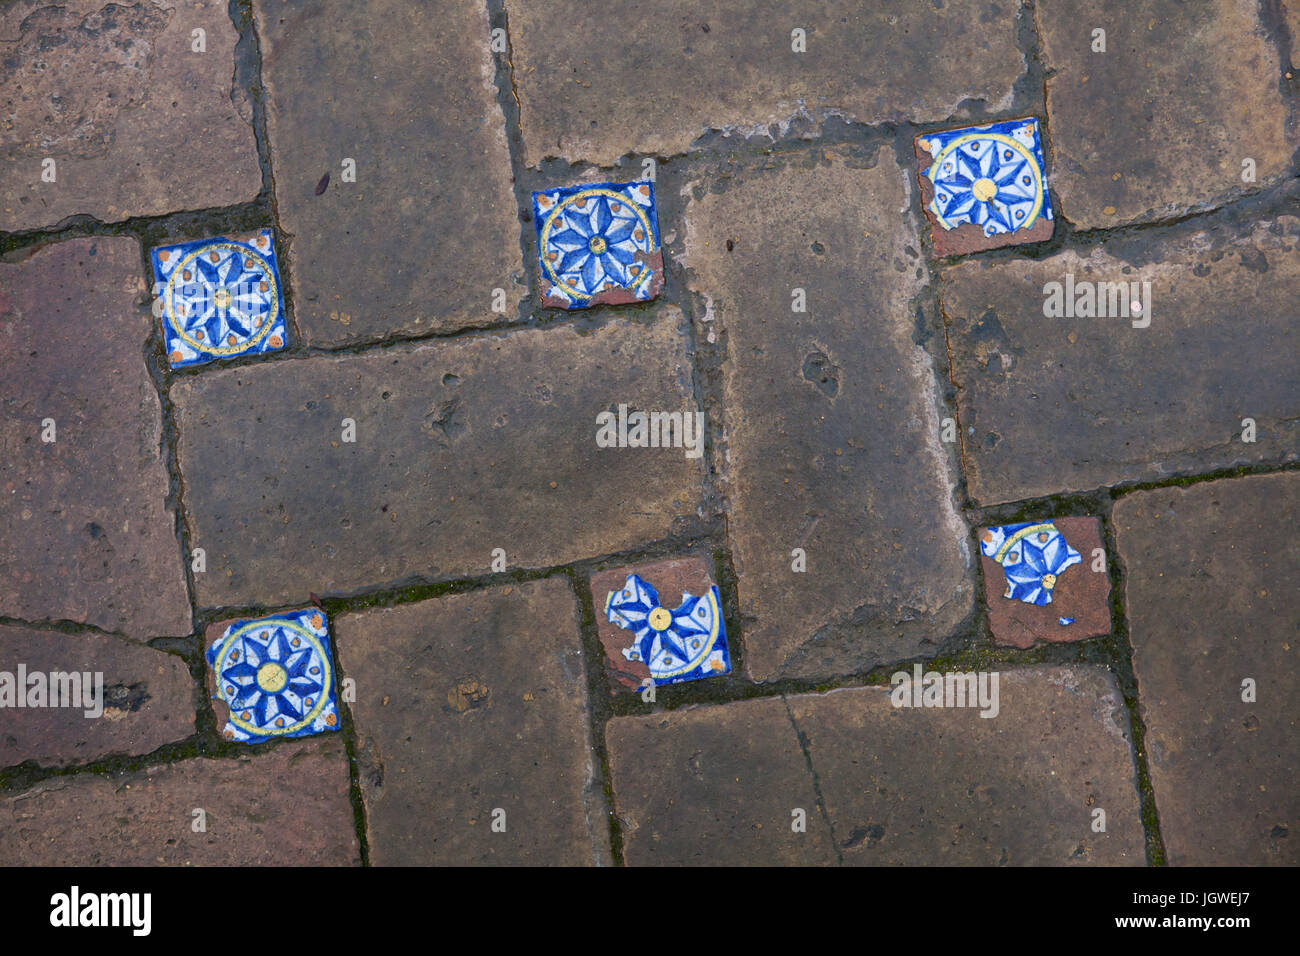 Spanisch Zinn glasiert bemalte Fliesen Azulejos aus dem 16. Jahrhundert auf dem Boden im Jardin de Las Flores (Garten der Blumen) genannt, in der Real Alcázar de Sevilla in Sevilla, Andalusien, Spanien. Stockfoto